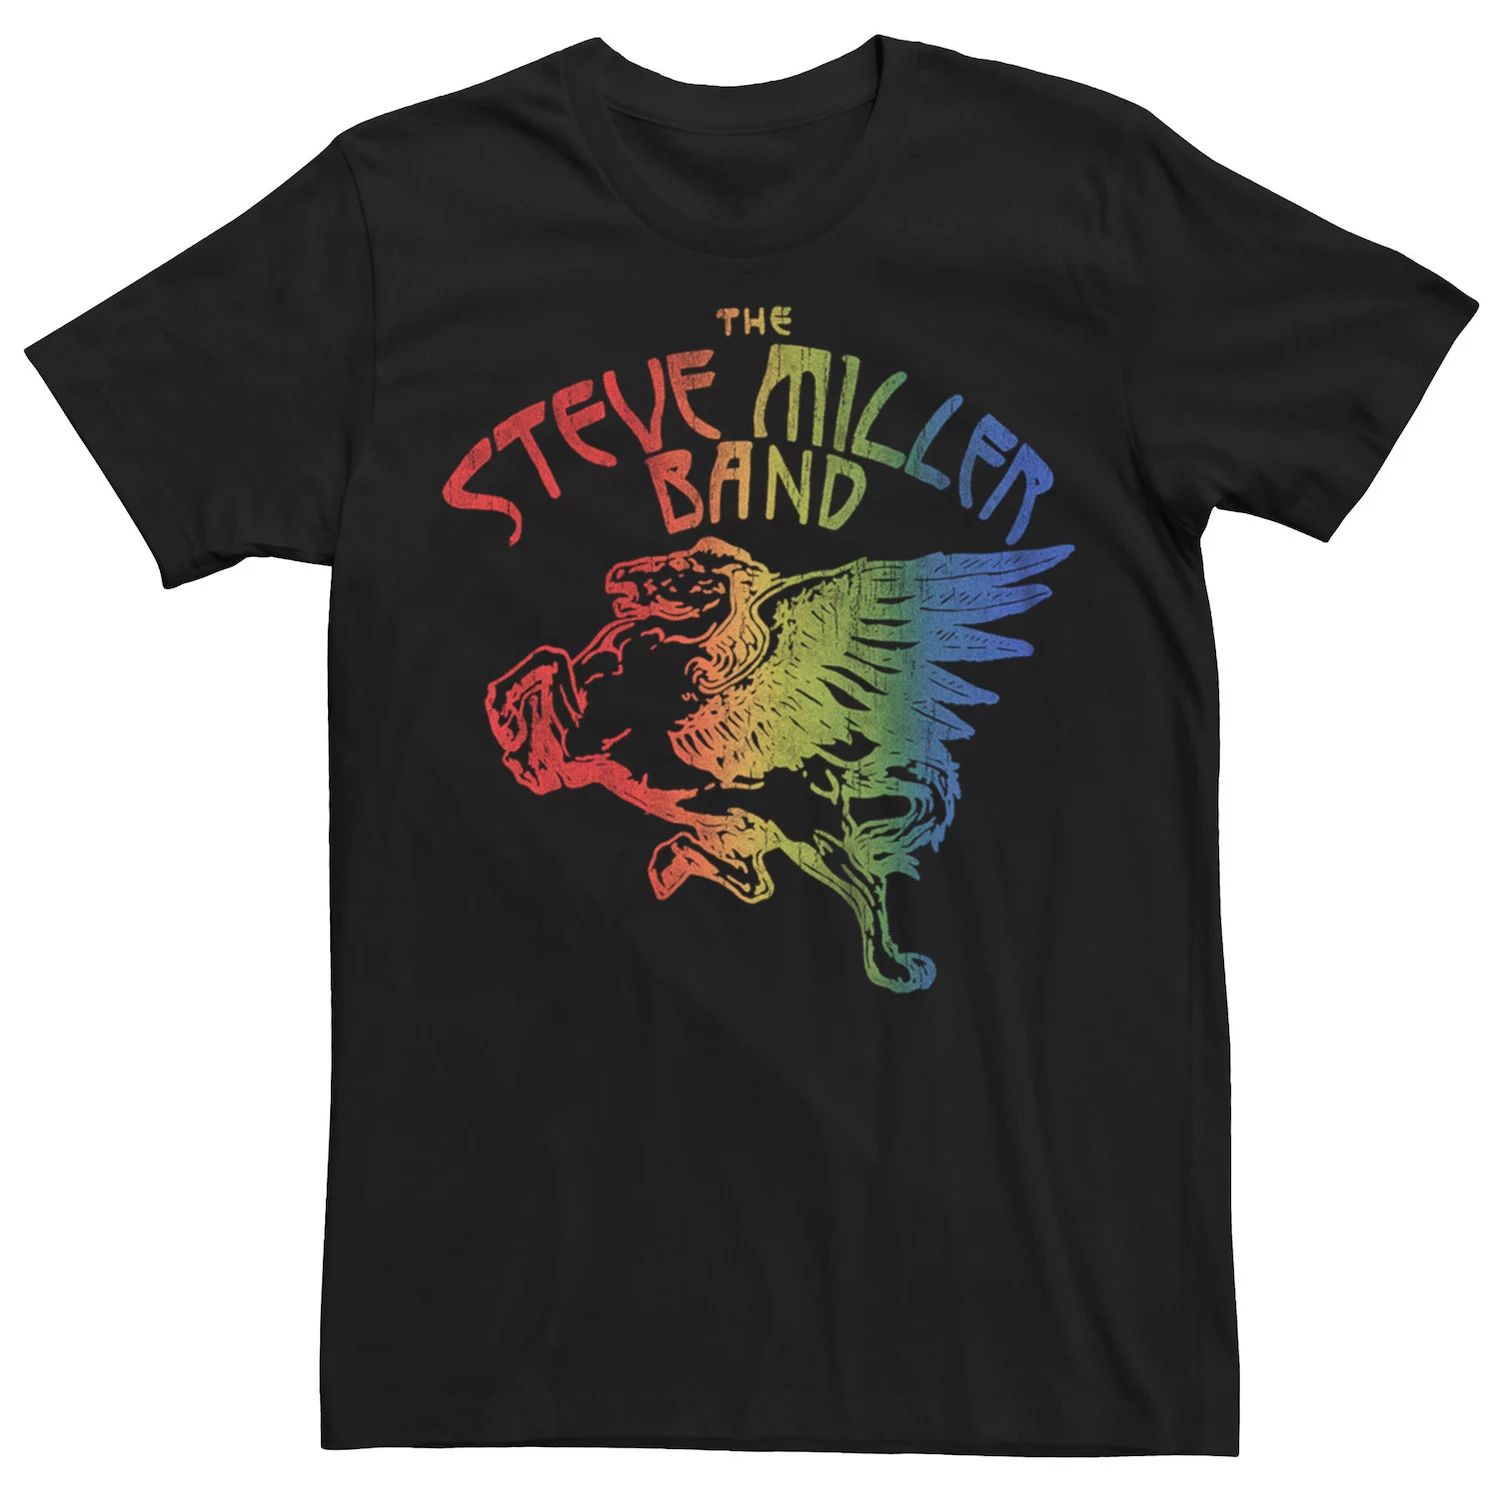 Мужская футболка Steve Miller Rainbow Band Licensed Character miller steve band виниловая пластинка miller steve band joker